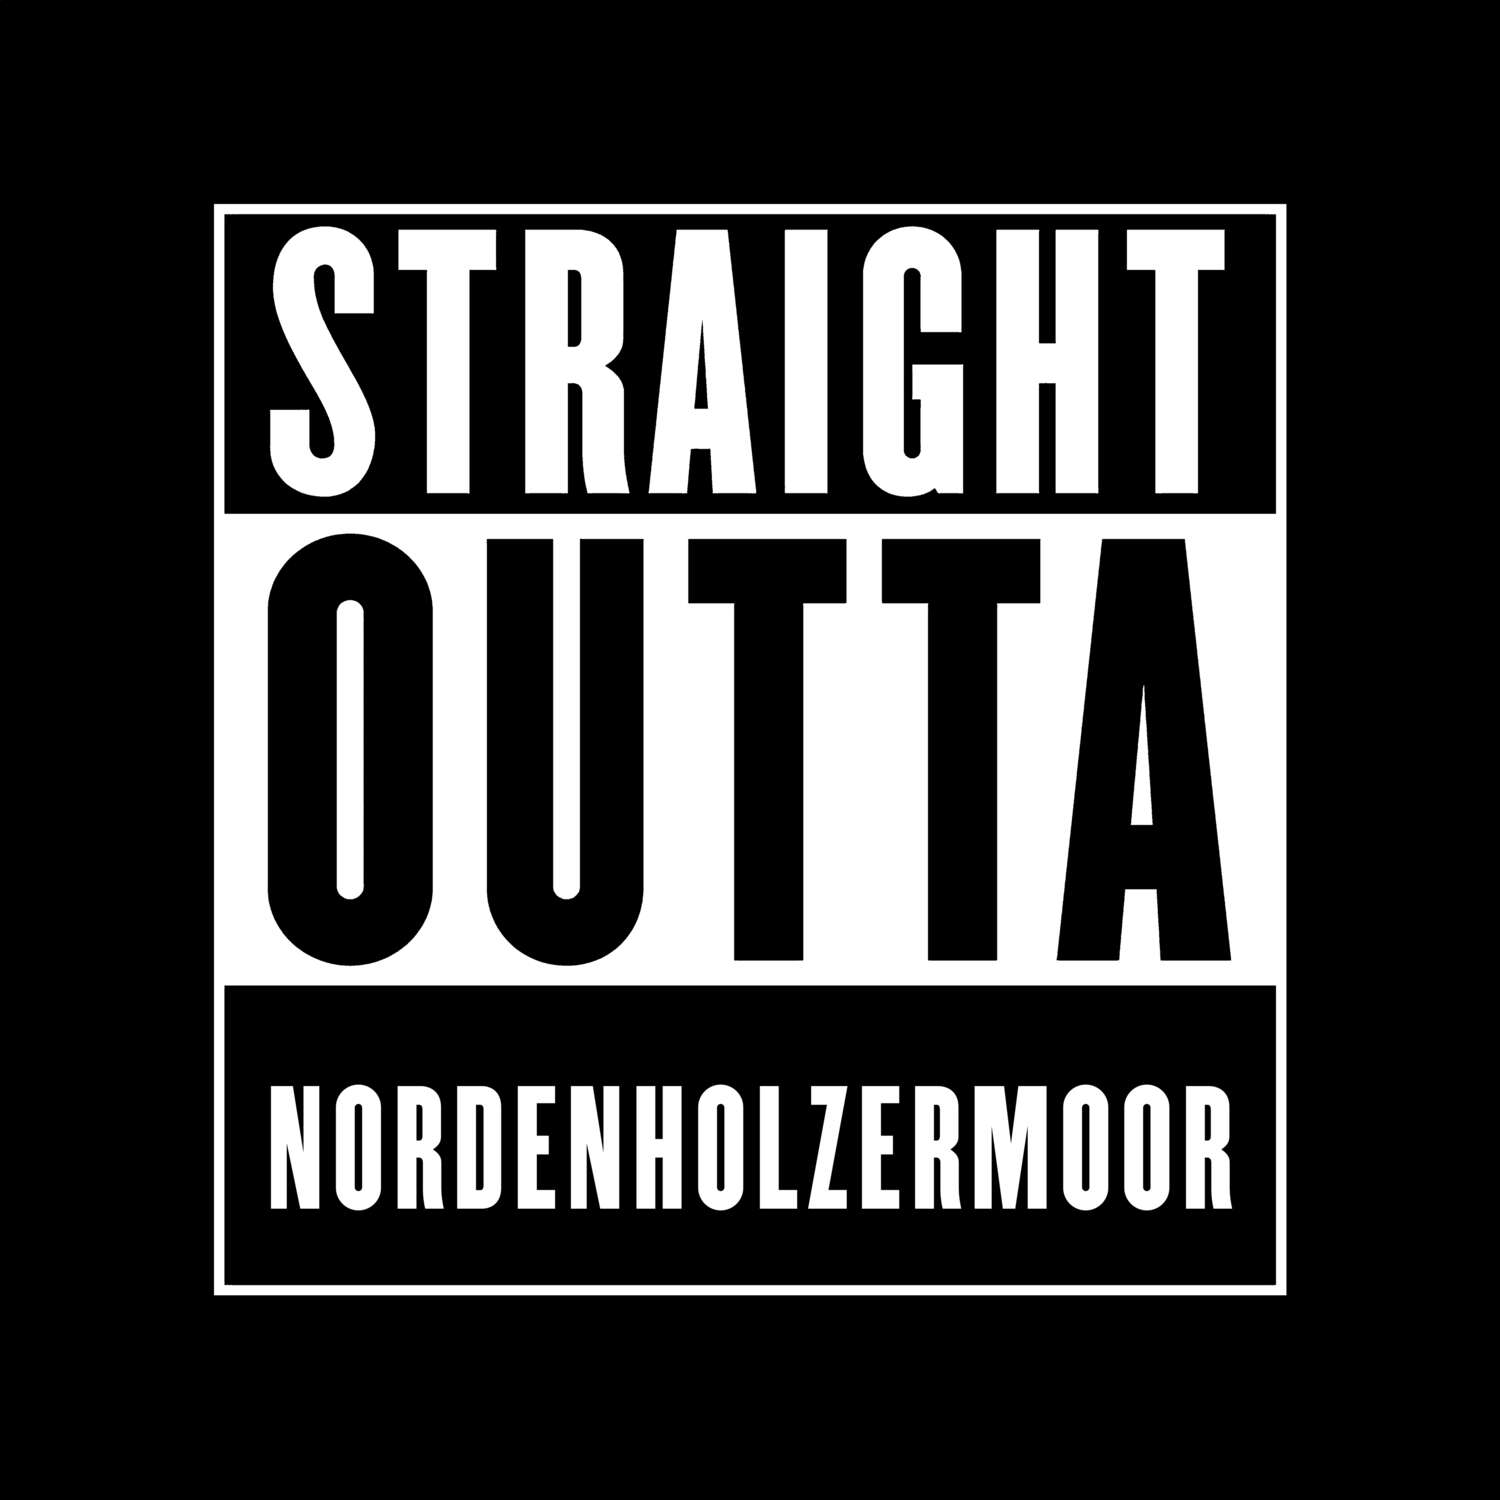 Nordenholzermoor T-Shirt »Straight Outta«